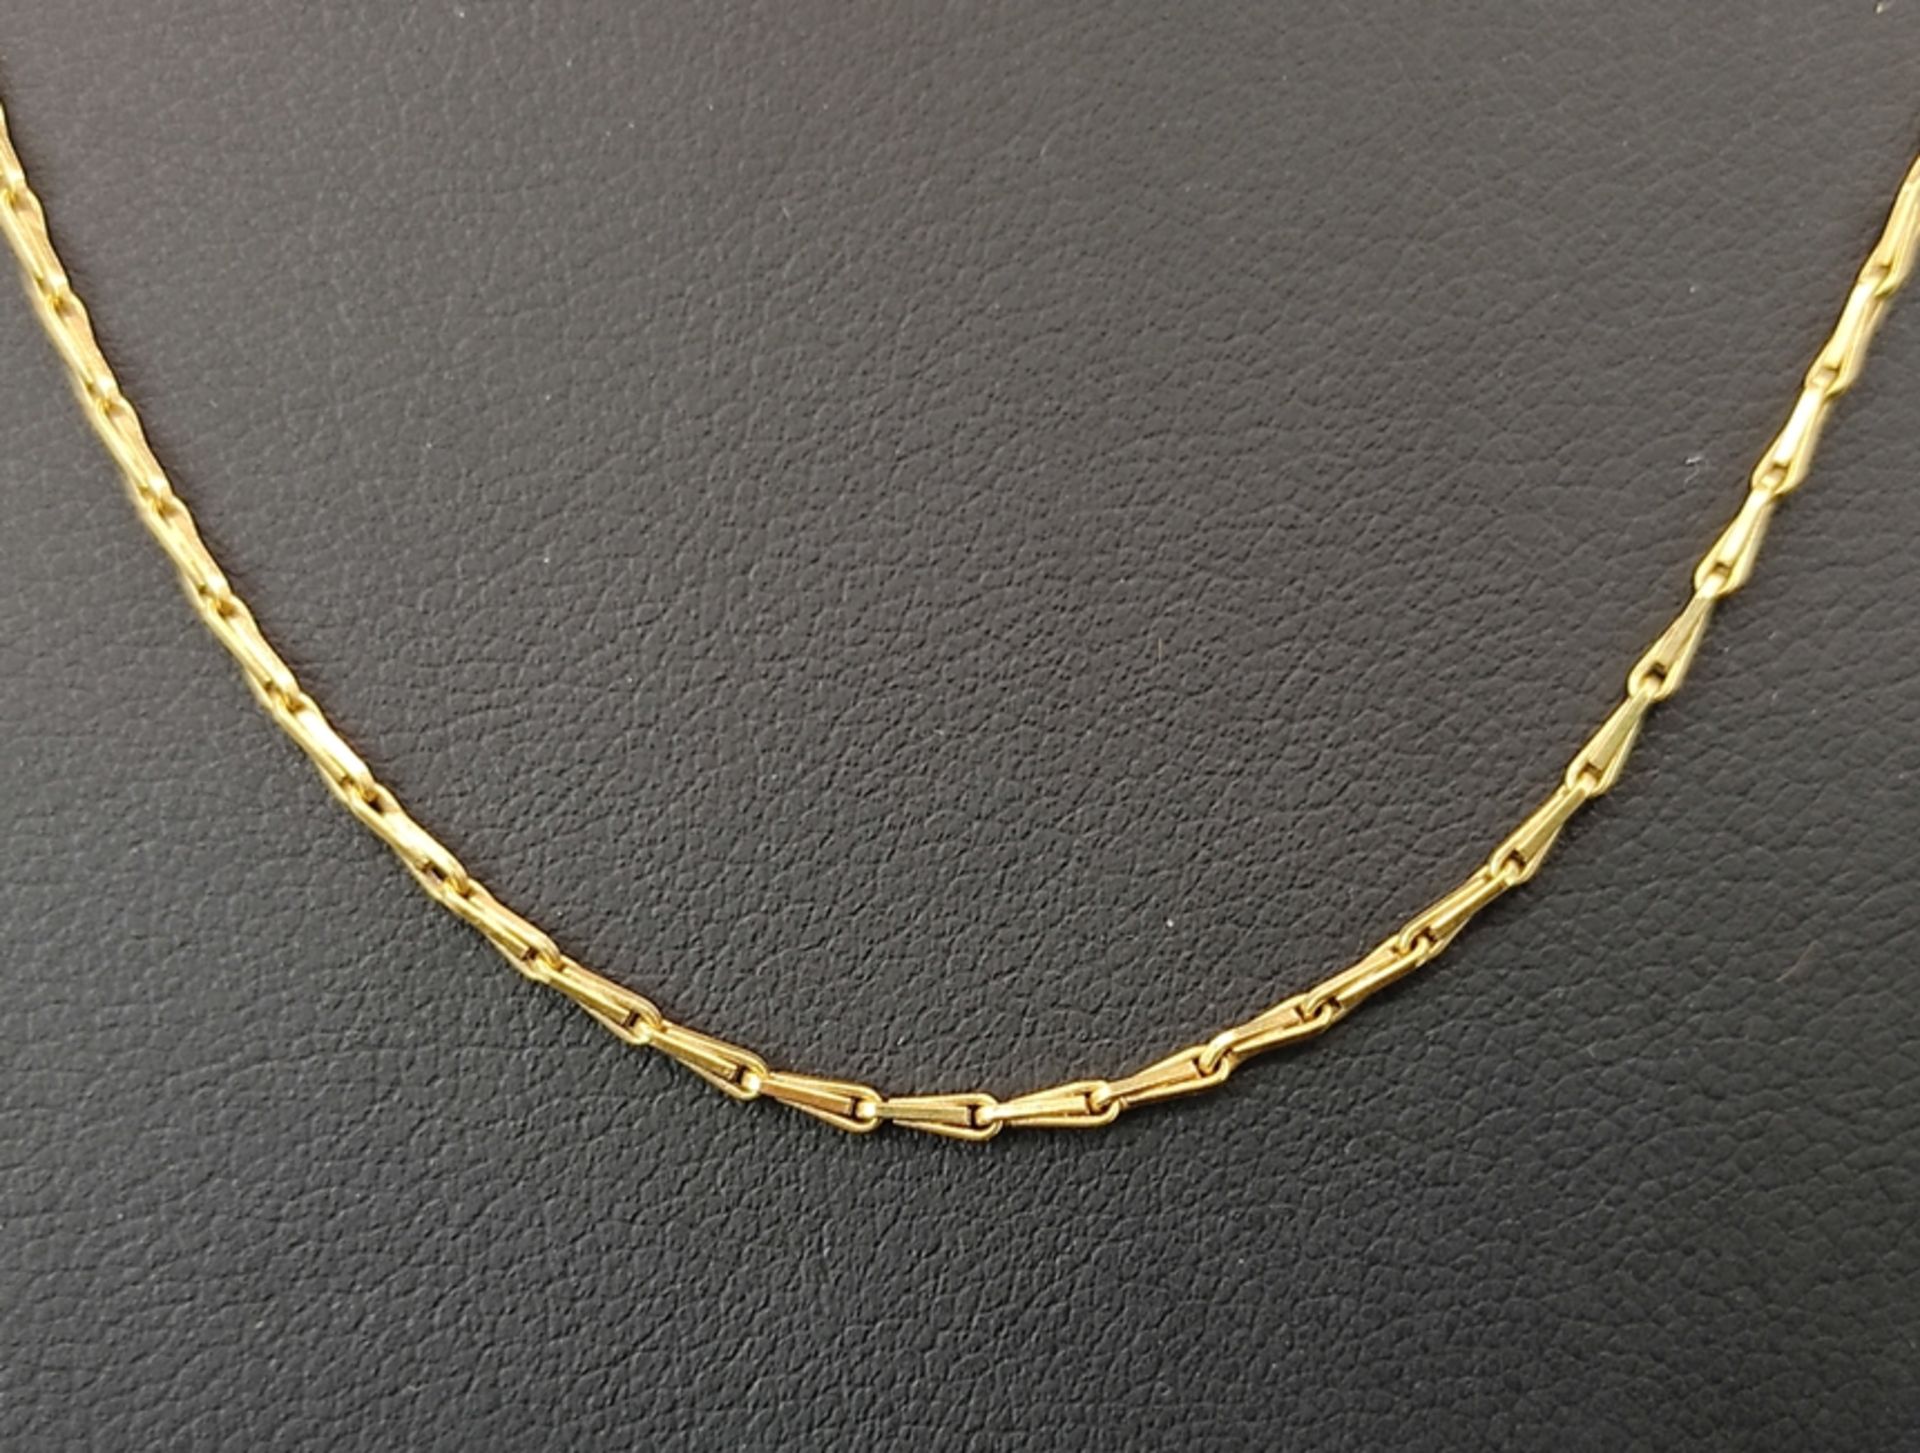 Halskette, längliche aneinander gesetzte Glieder, Ring-Verschluss, 750/18K Gelbgold, 4,37g, Länge 4